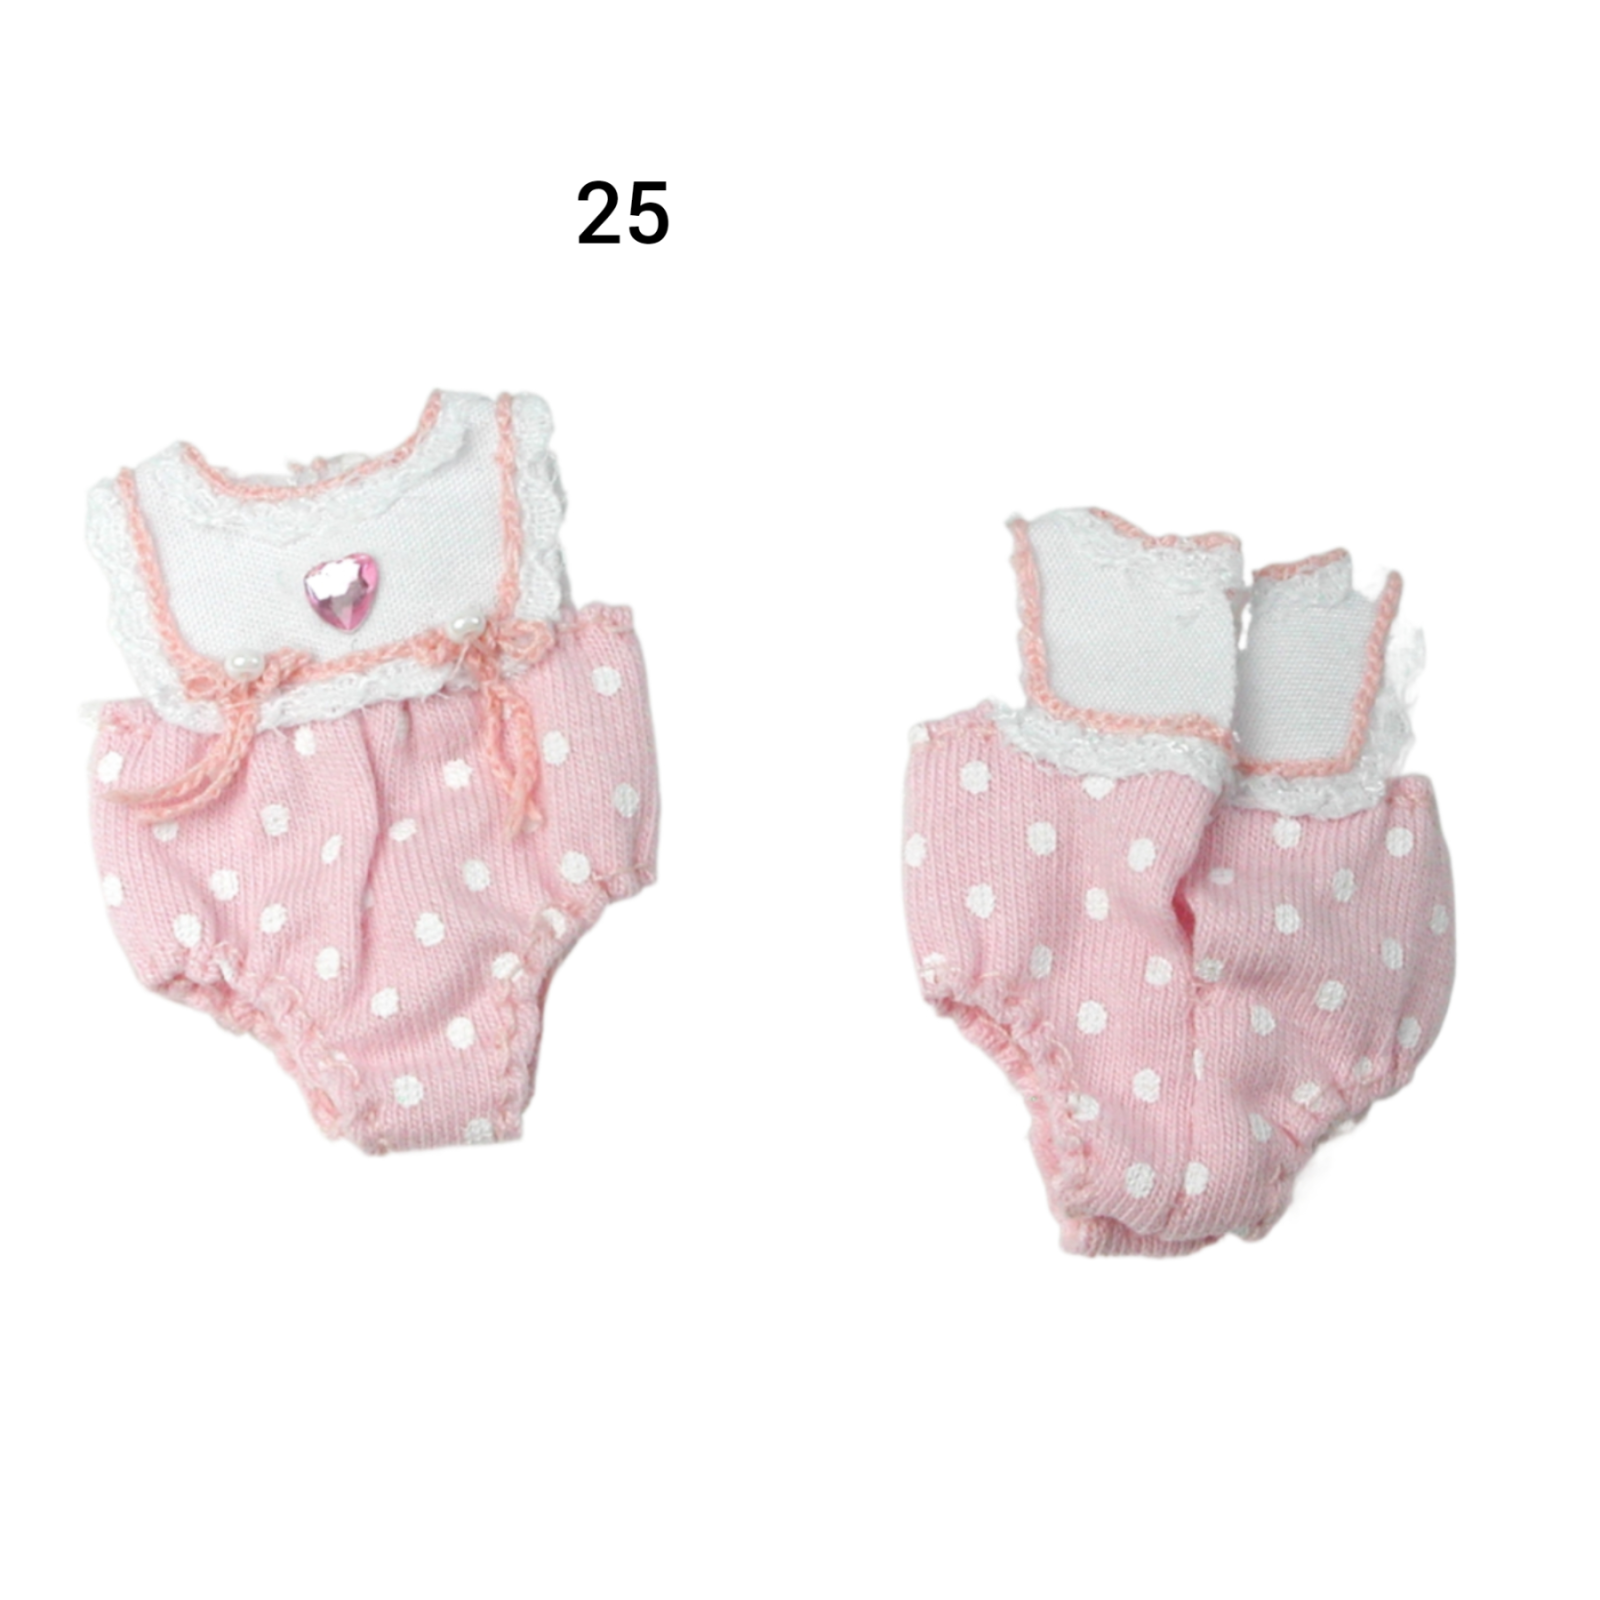 Pumphose Spielhose für das Baby Kleidung Maßstab 1:12 2